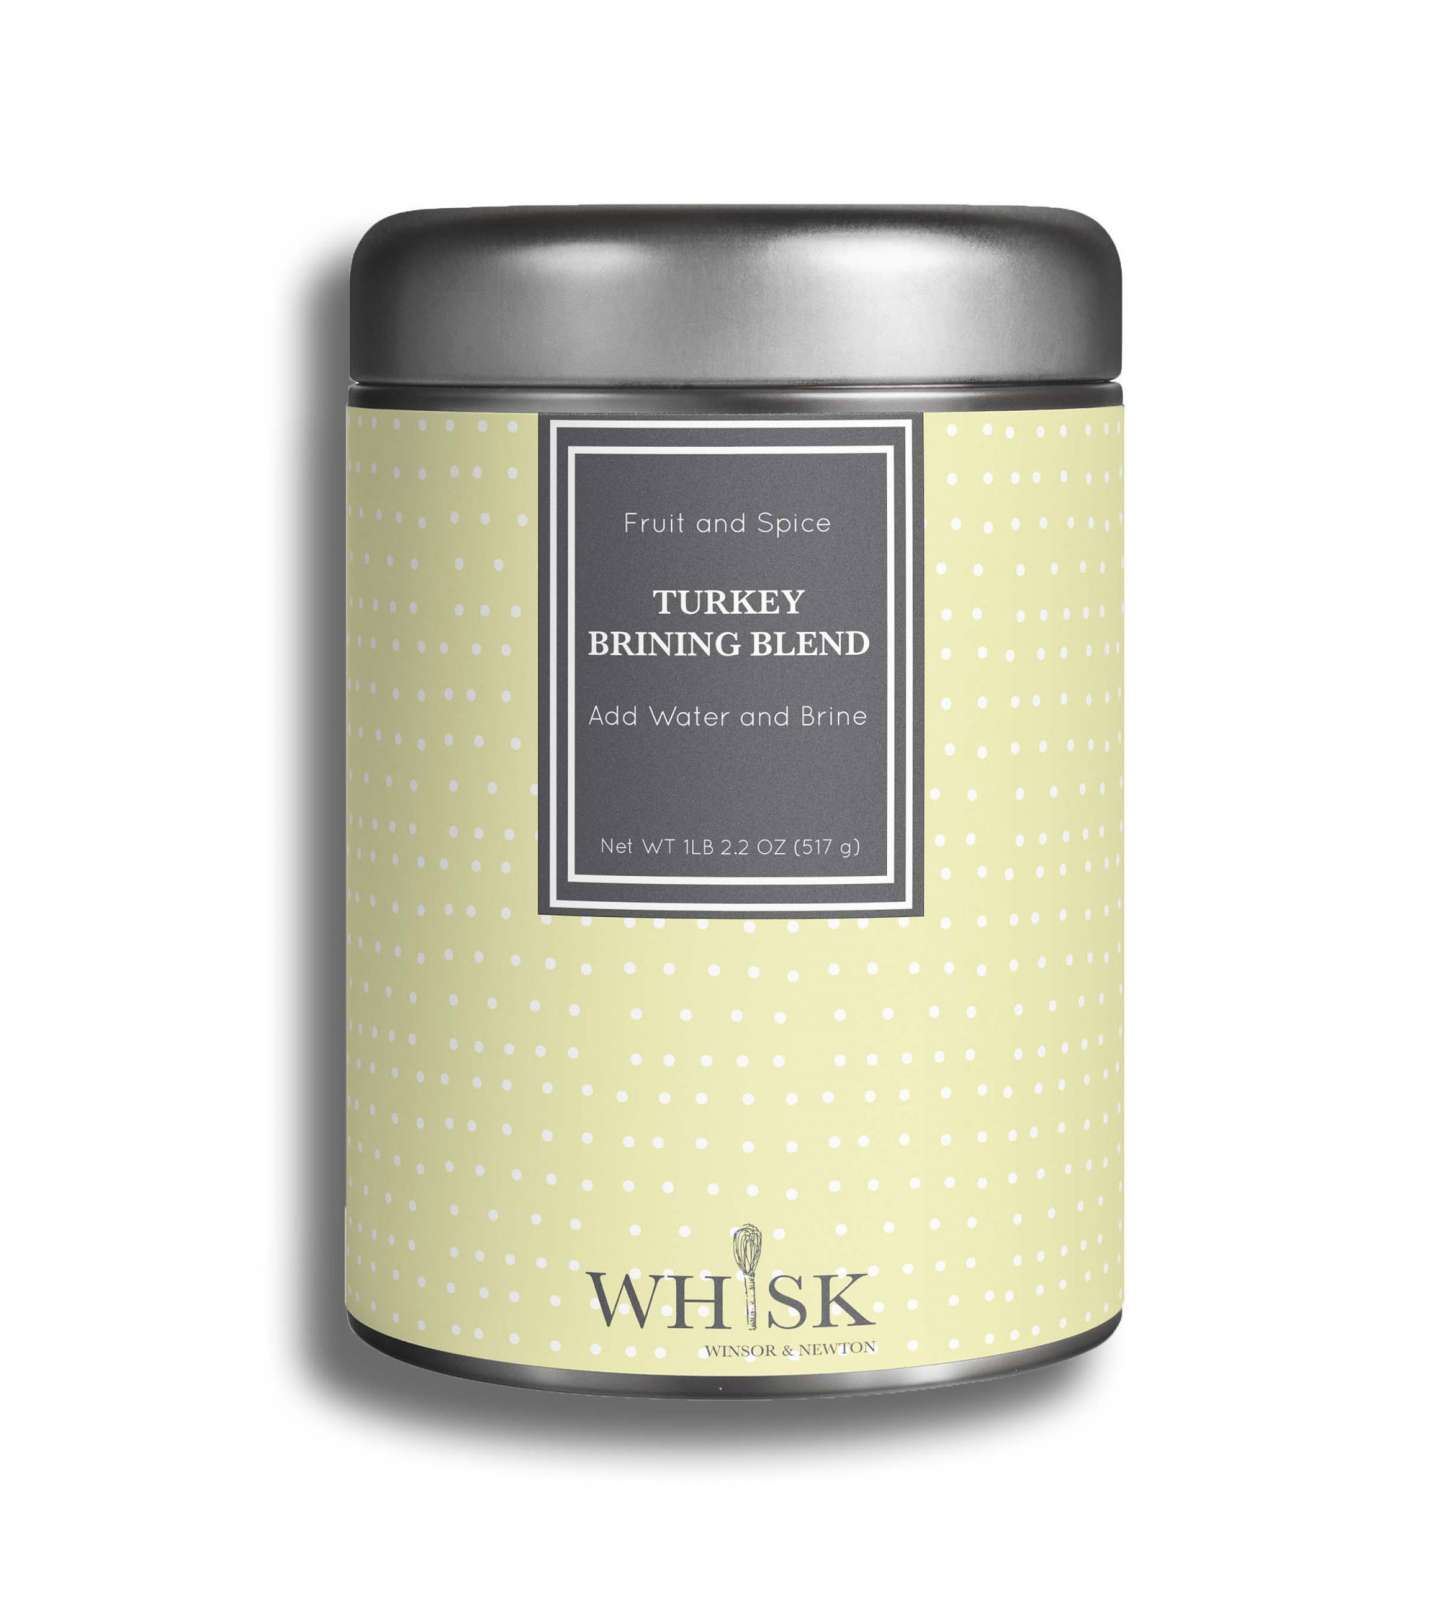 Whisk Branding